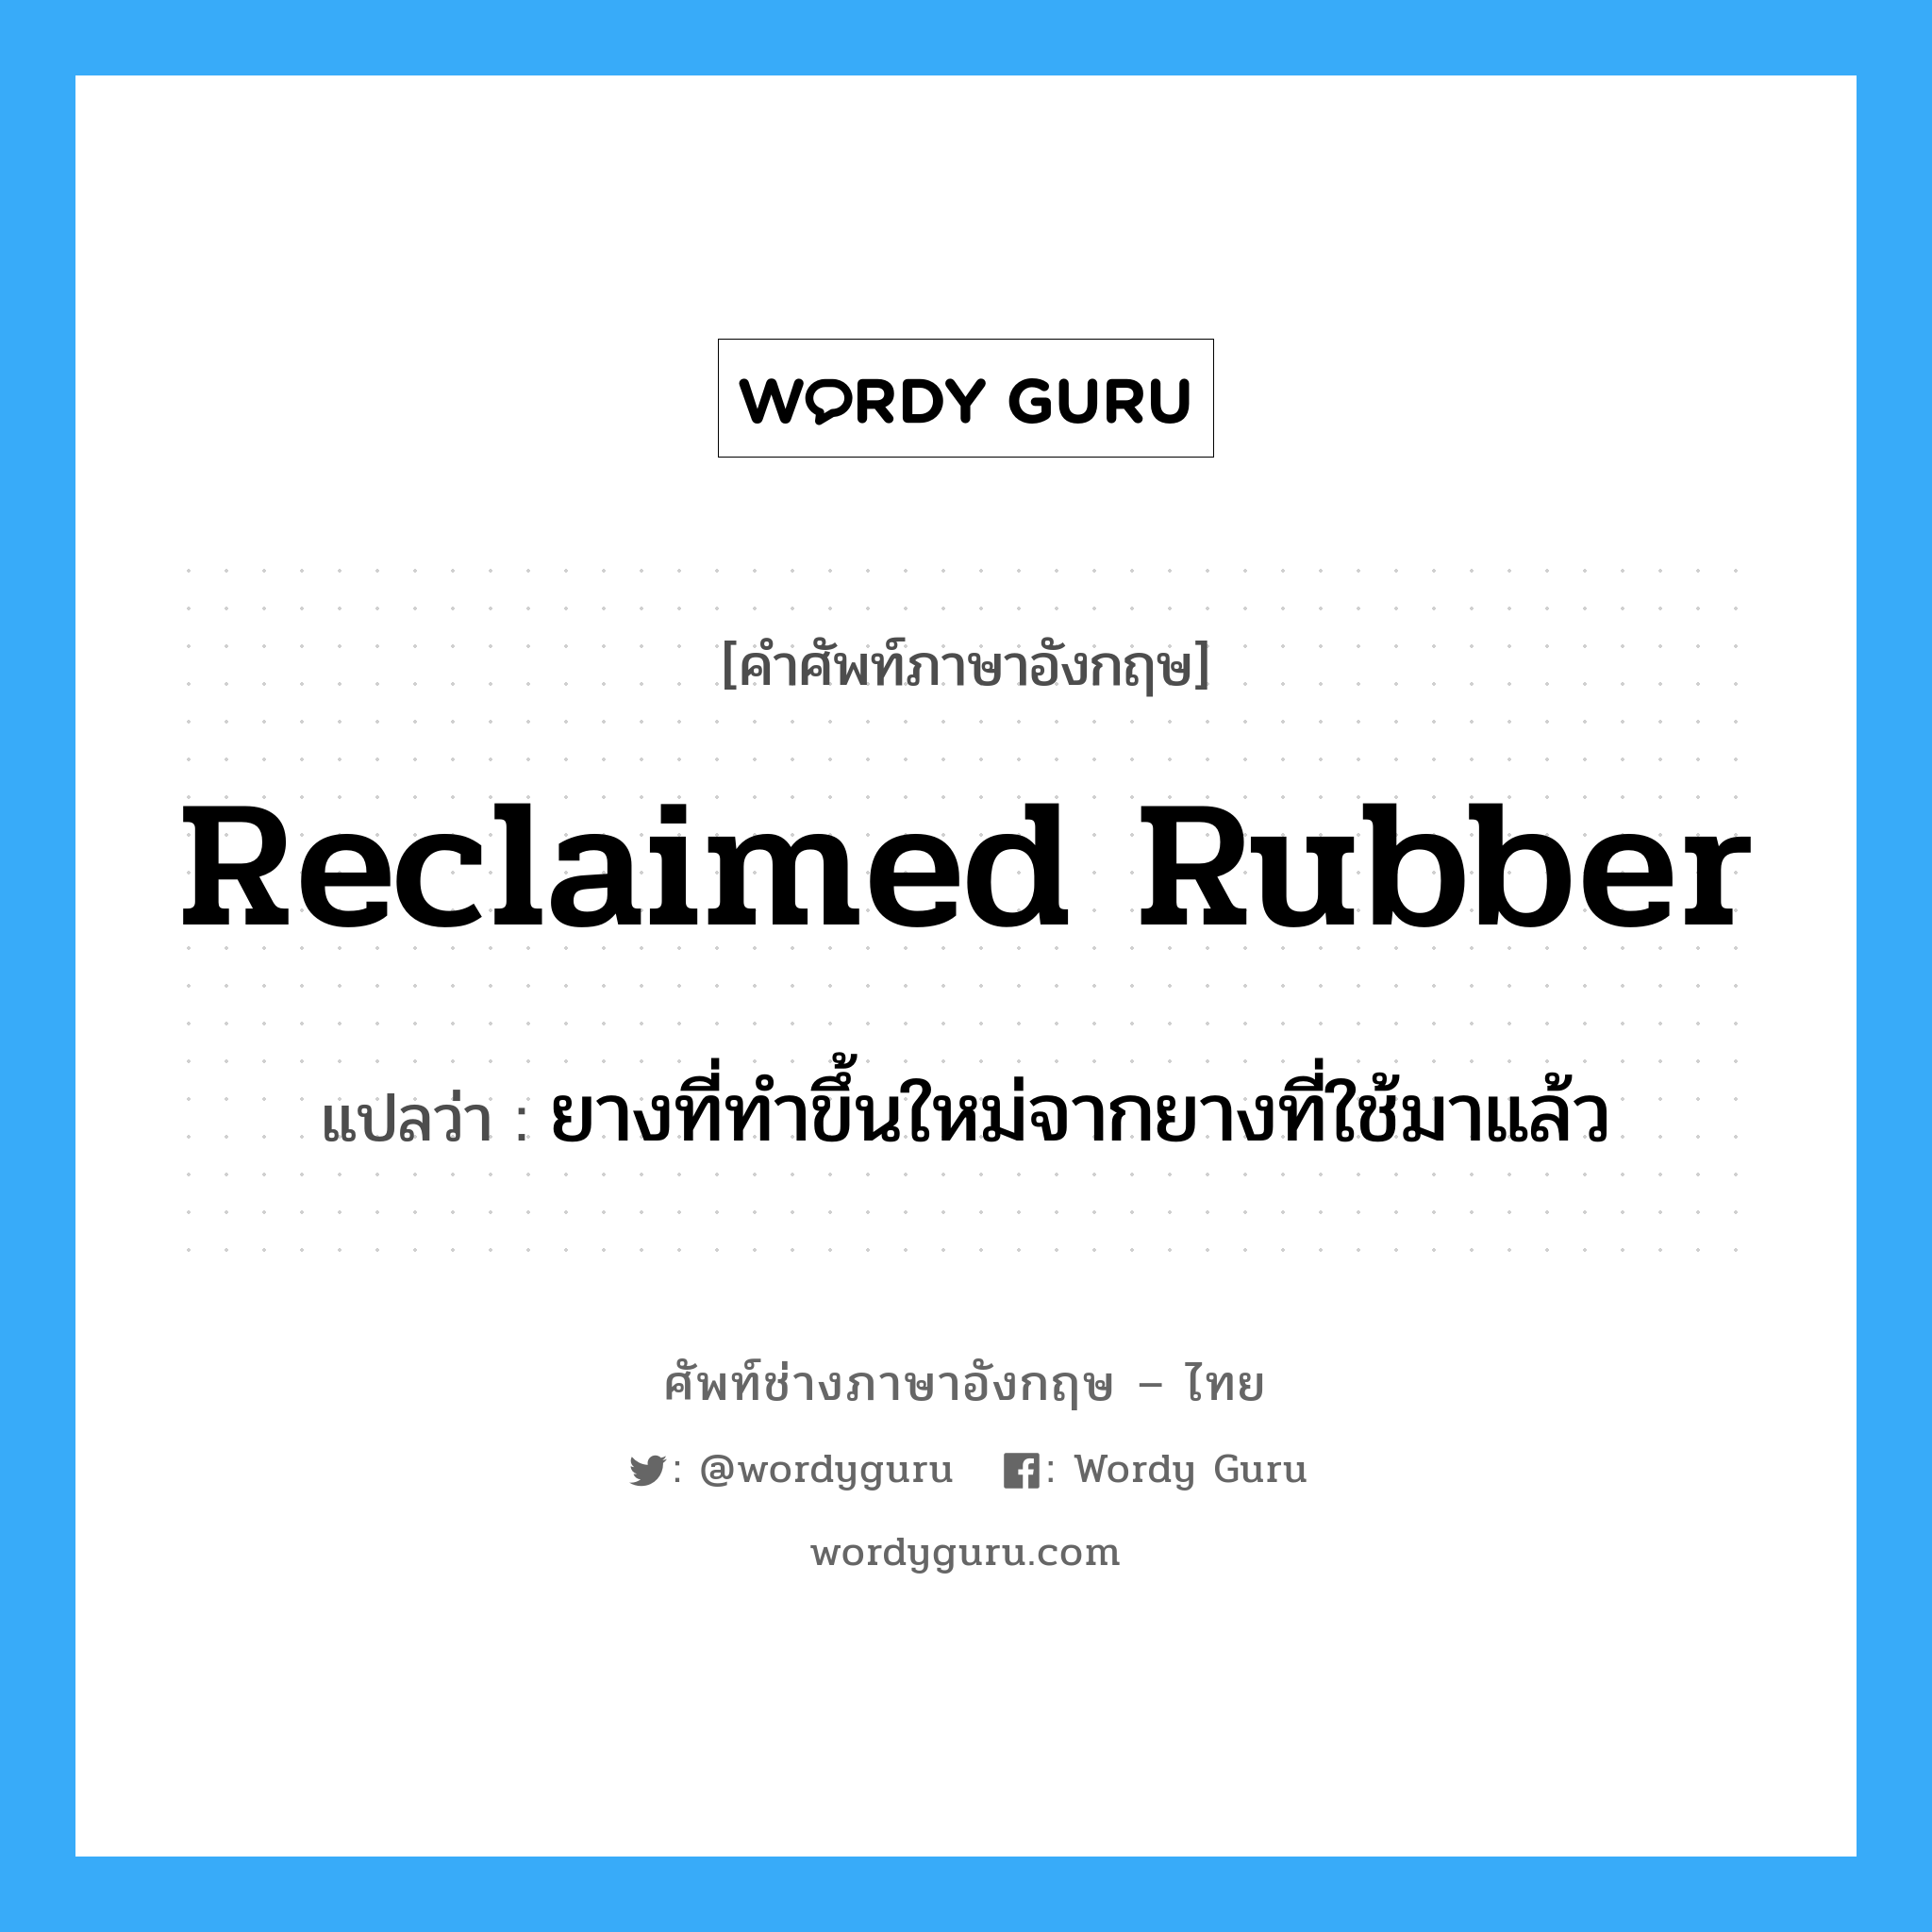 reclaimed rubber แปลว่า?, คำศัพท์ช่างภาษาอังกฤษ - ไทย reclaimed rubber คำศัพท์ภาษาอังกฤษ reclaimed rubber แปลว่า ยางที่ทำขึ้นใหม่จากยางที่ใช้มาแล้ว